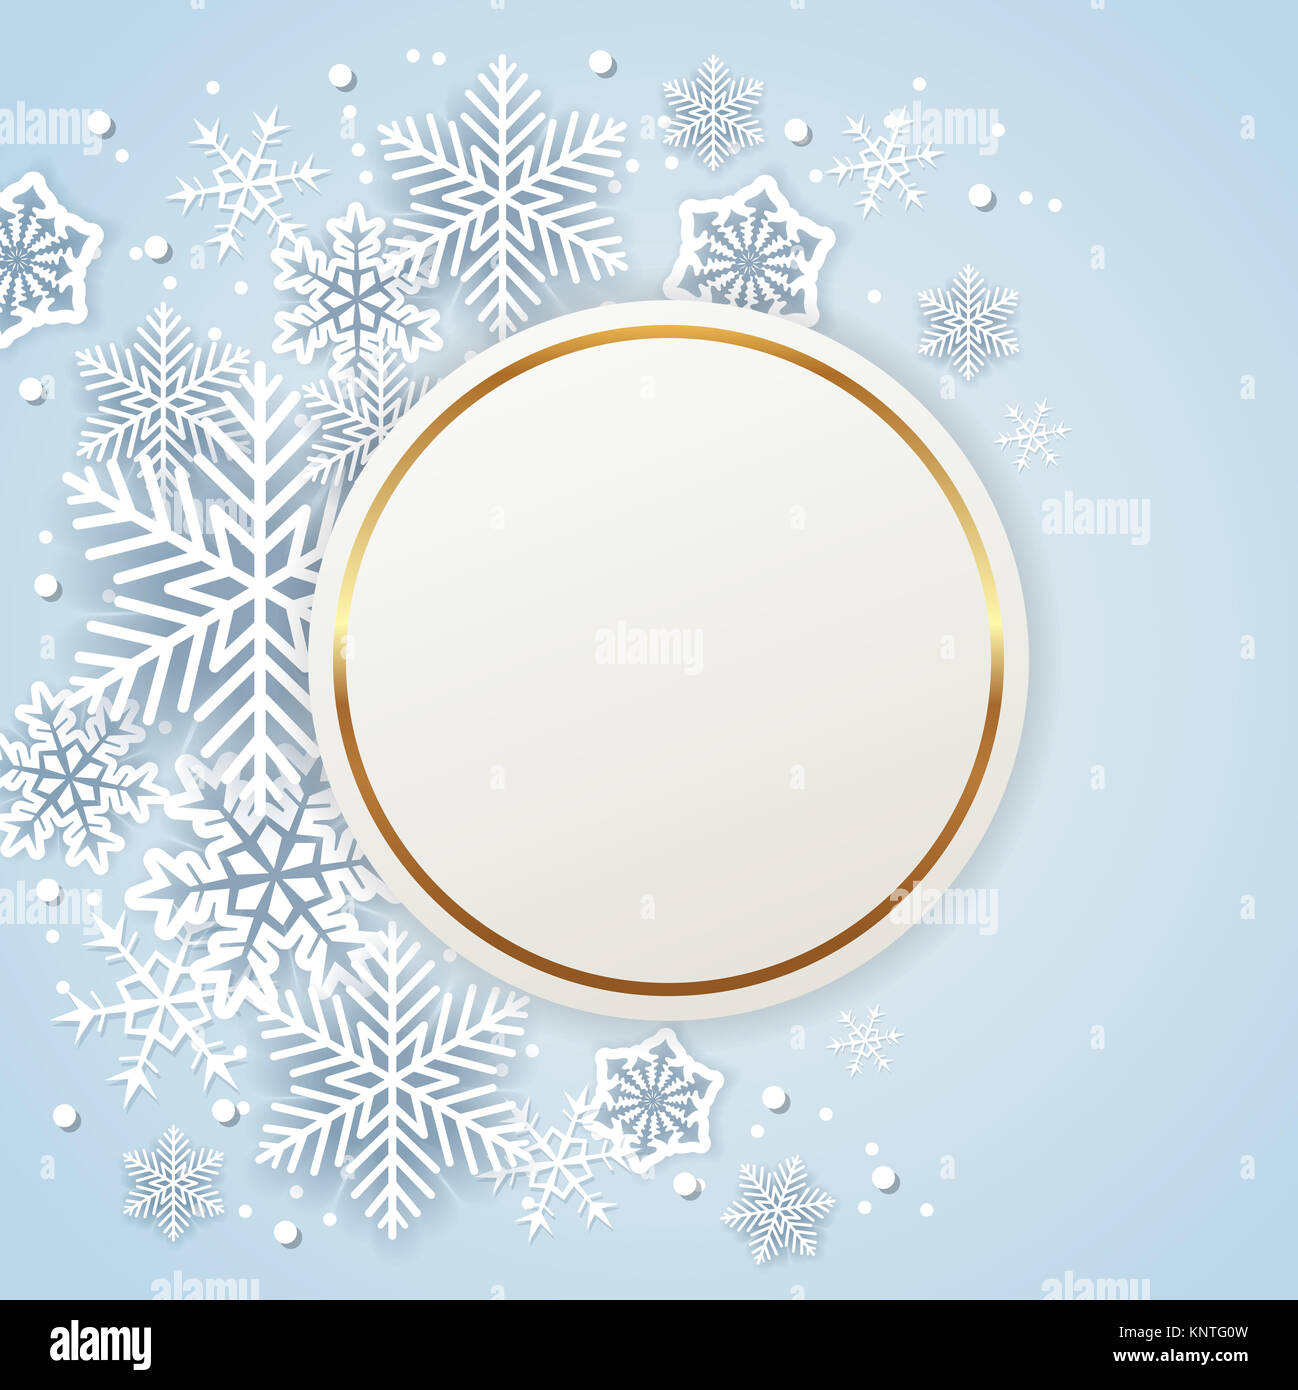 Shining golden holiday lo sfondo con il Libro bianco di fiocchi di neve. Abstract round banner di Natale. Foto Stock